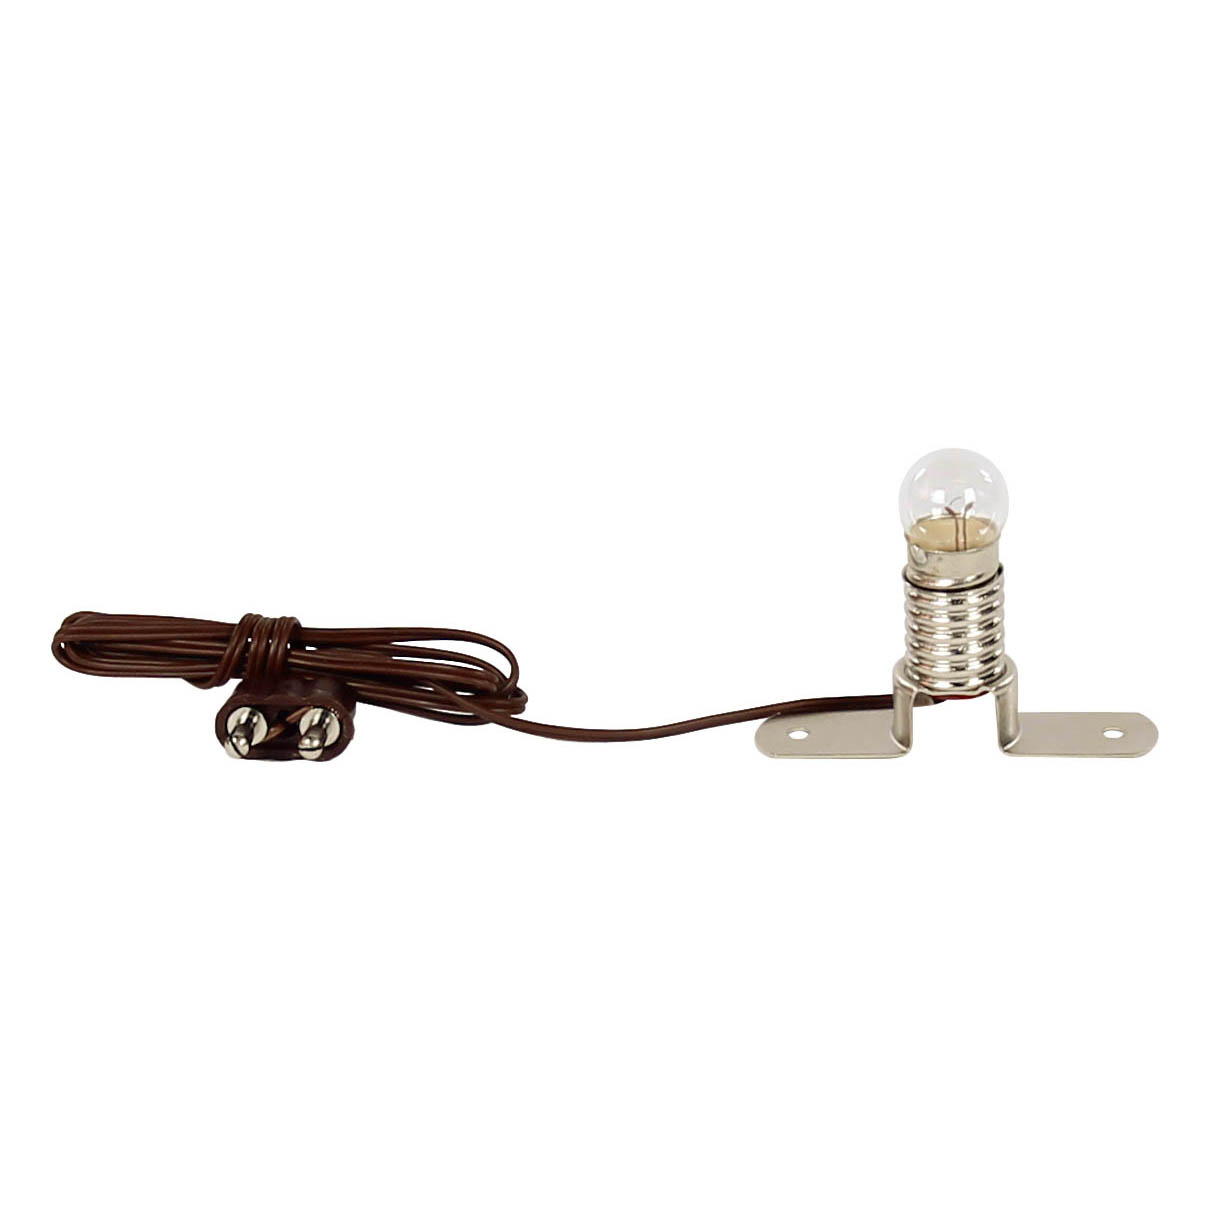 Stegfassung E10 mit Lampe 3,5V Stecker und Kabel im Dregeno Online Shop günstig kaufen